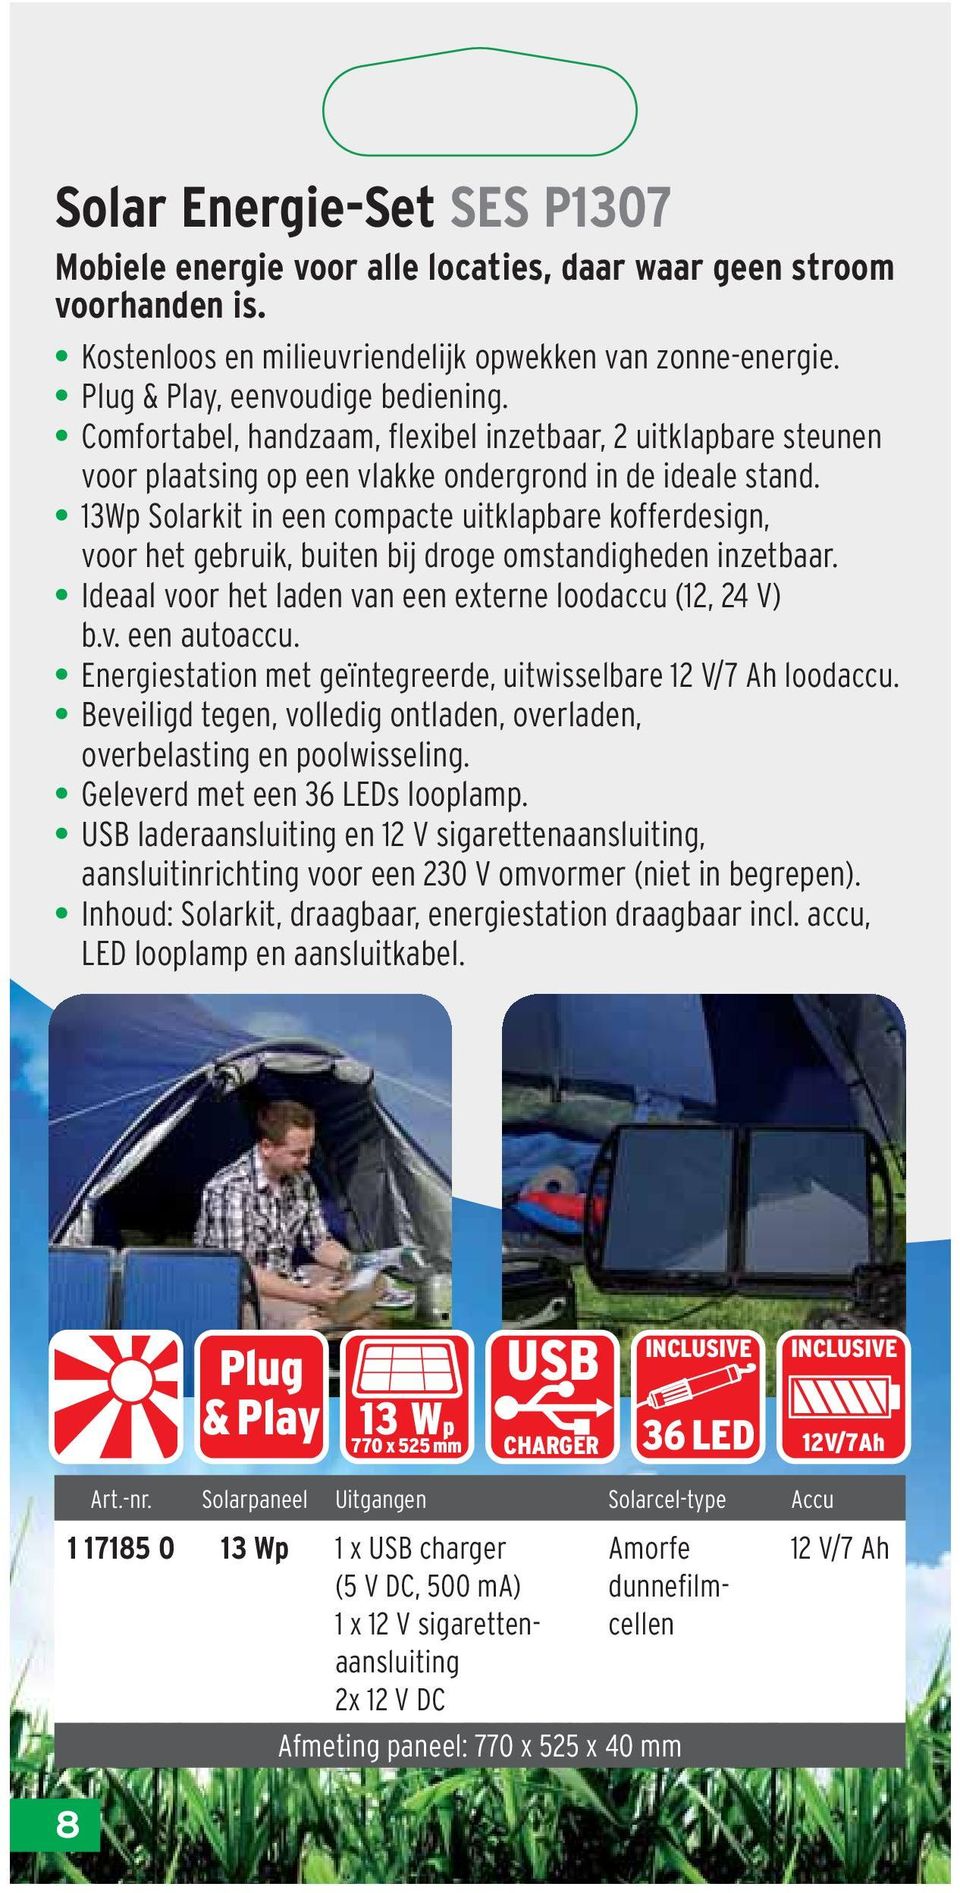 13Wp Solarkit in een compacte uitklapbare kofferdesign, voor het gebruik, buiten bij droge omstandigheden inzetbaar. Ideaal voor het laden van een externe loodaccu (12, 24 V) b.v. een autoaccu.